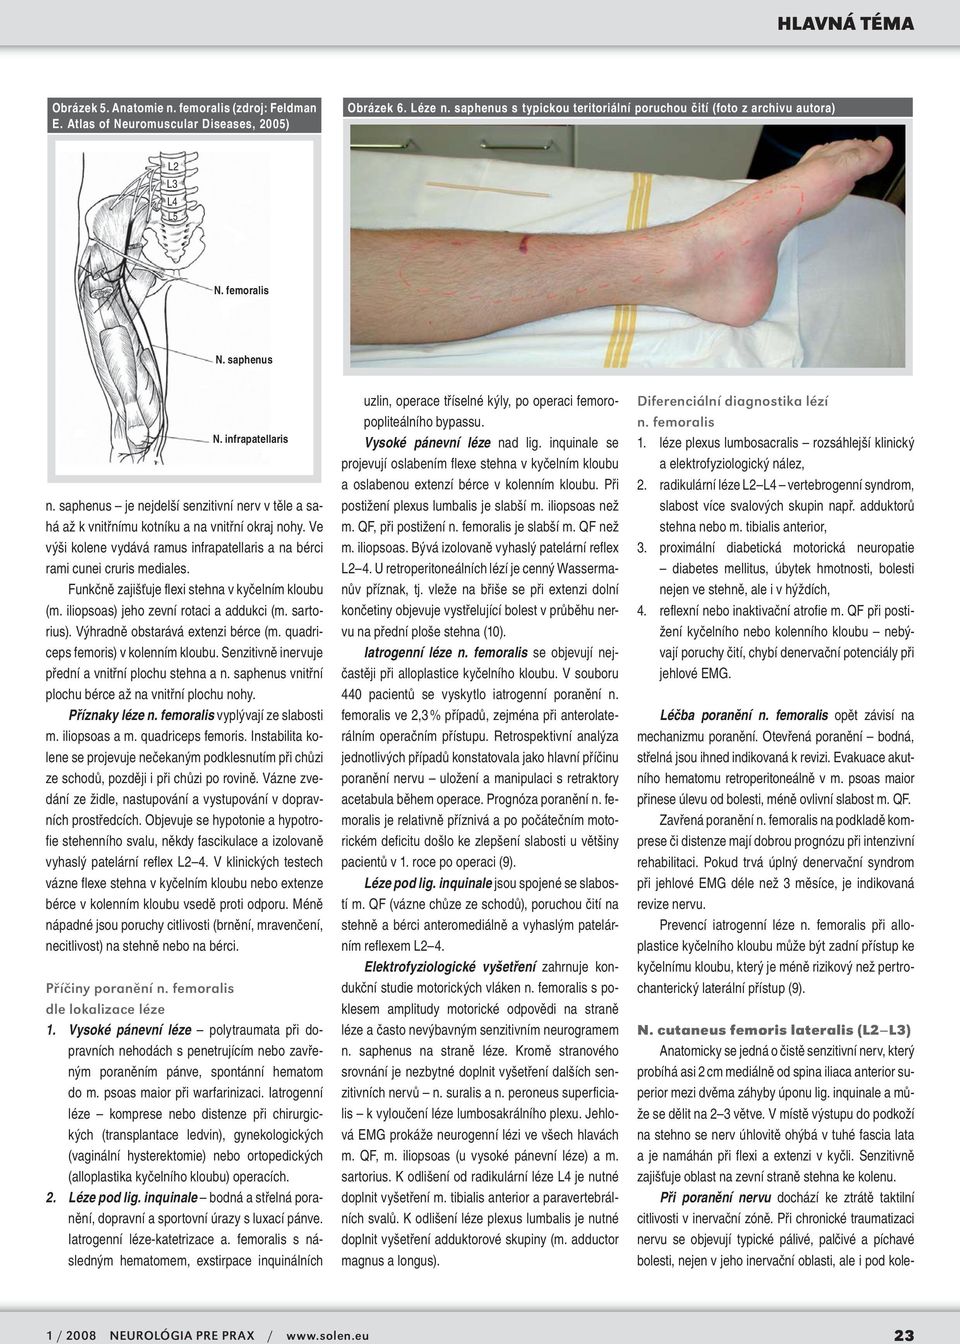 Ve výši kolene vydává ramus infrapatellaris a na bérci rami cunei cruris mediales. Funkčně zajišťuje flexi stehna v kyčelním kloubu (m. iliopsoas) jeho zevní rotaci a addukci (m. sartorius).